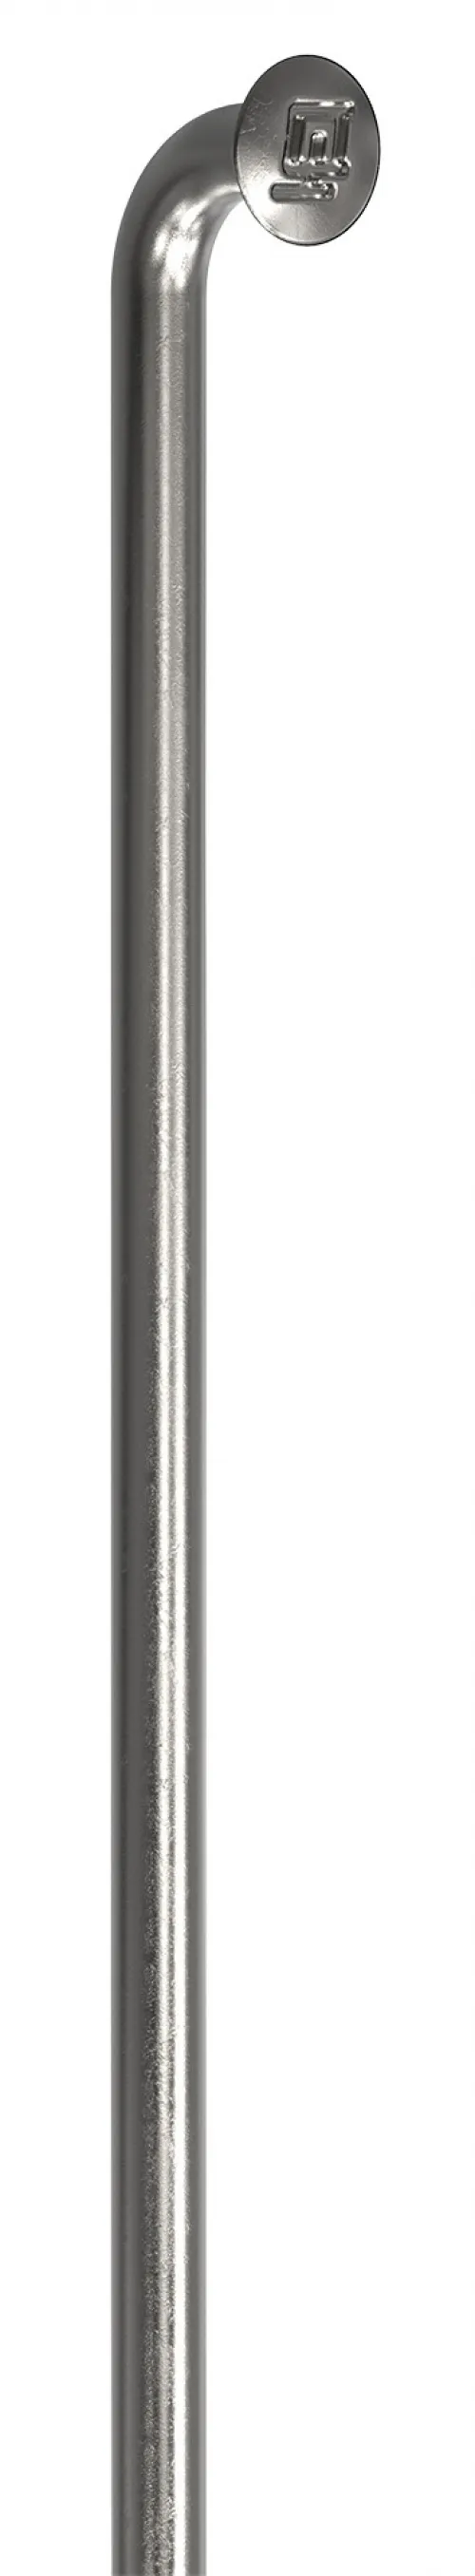 Спицы DT Swiss Champion (J-bend) 2.0mm x 191mm silver 100шт